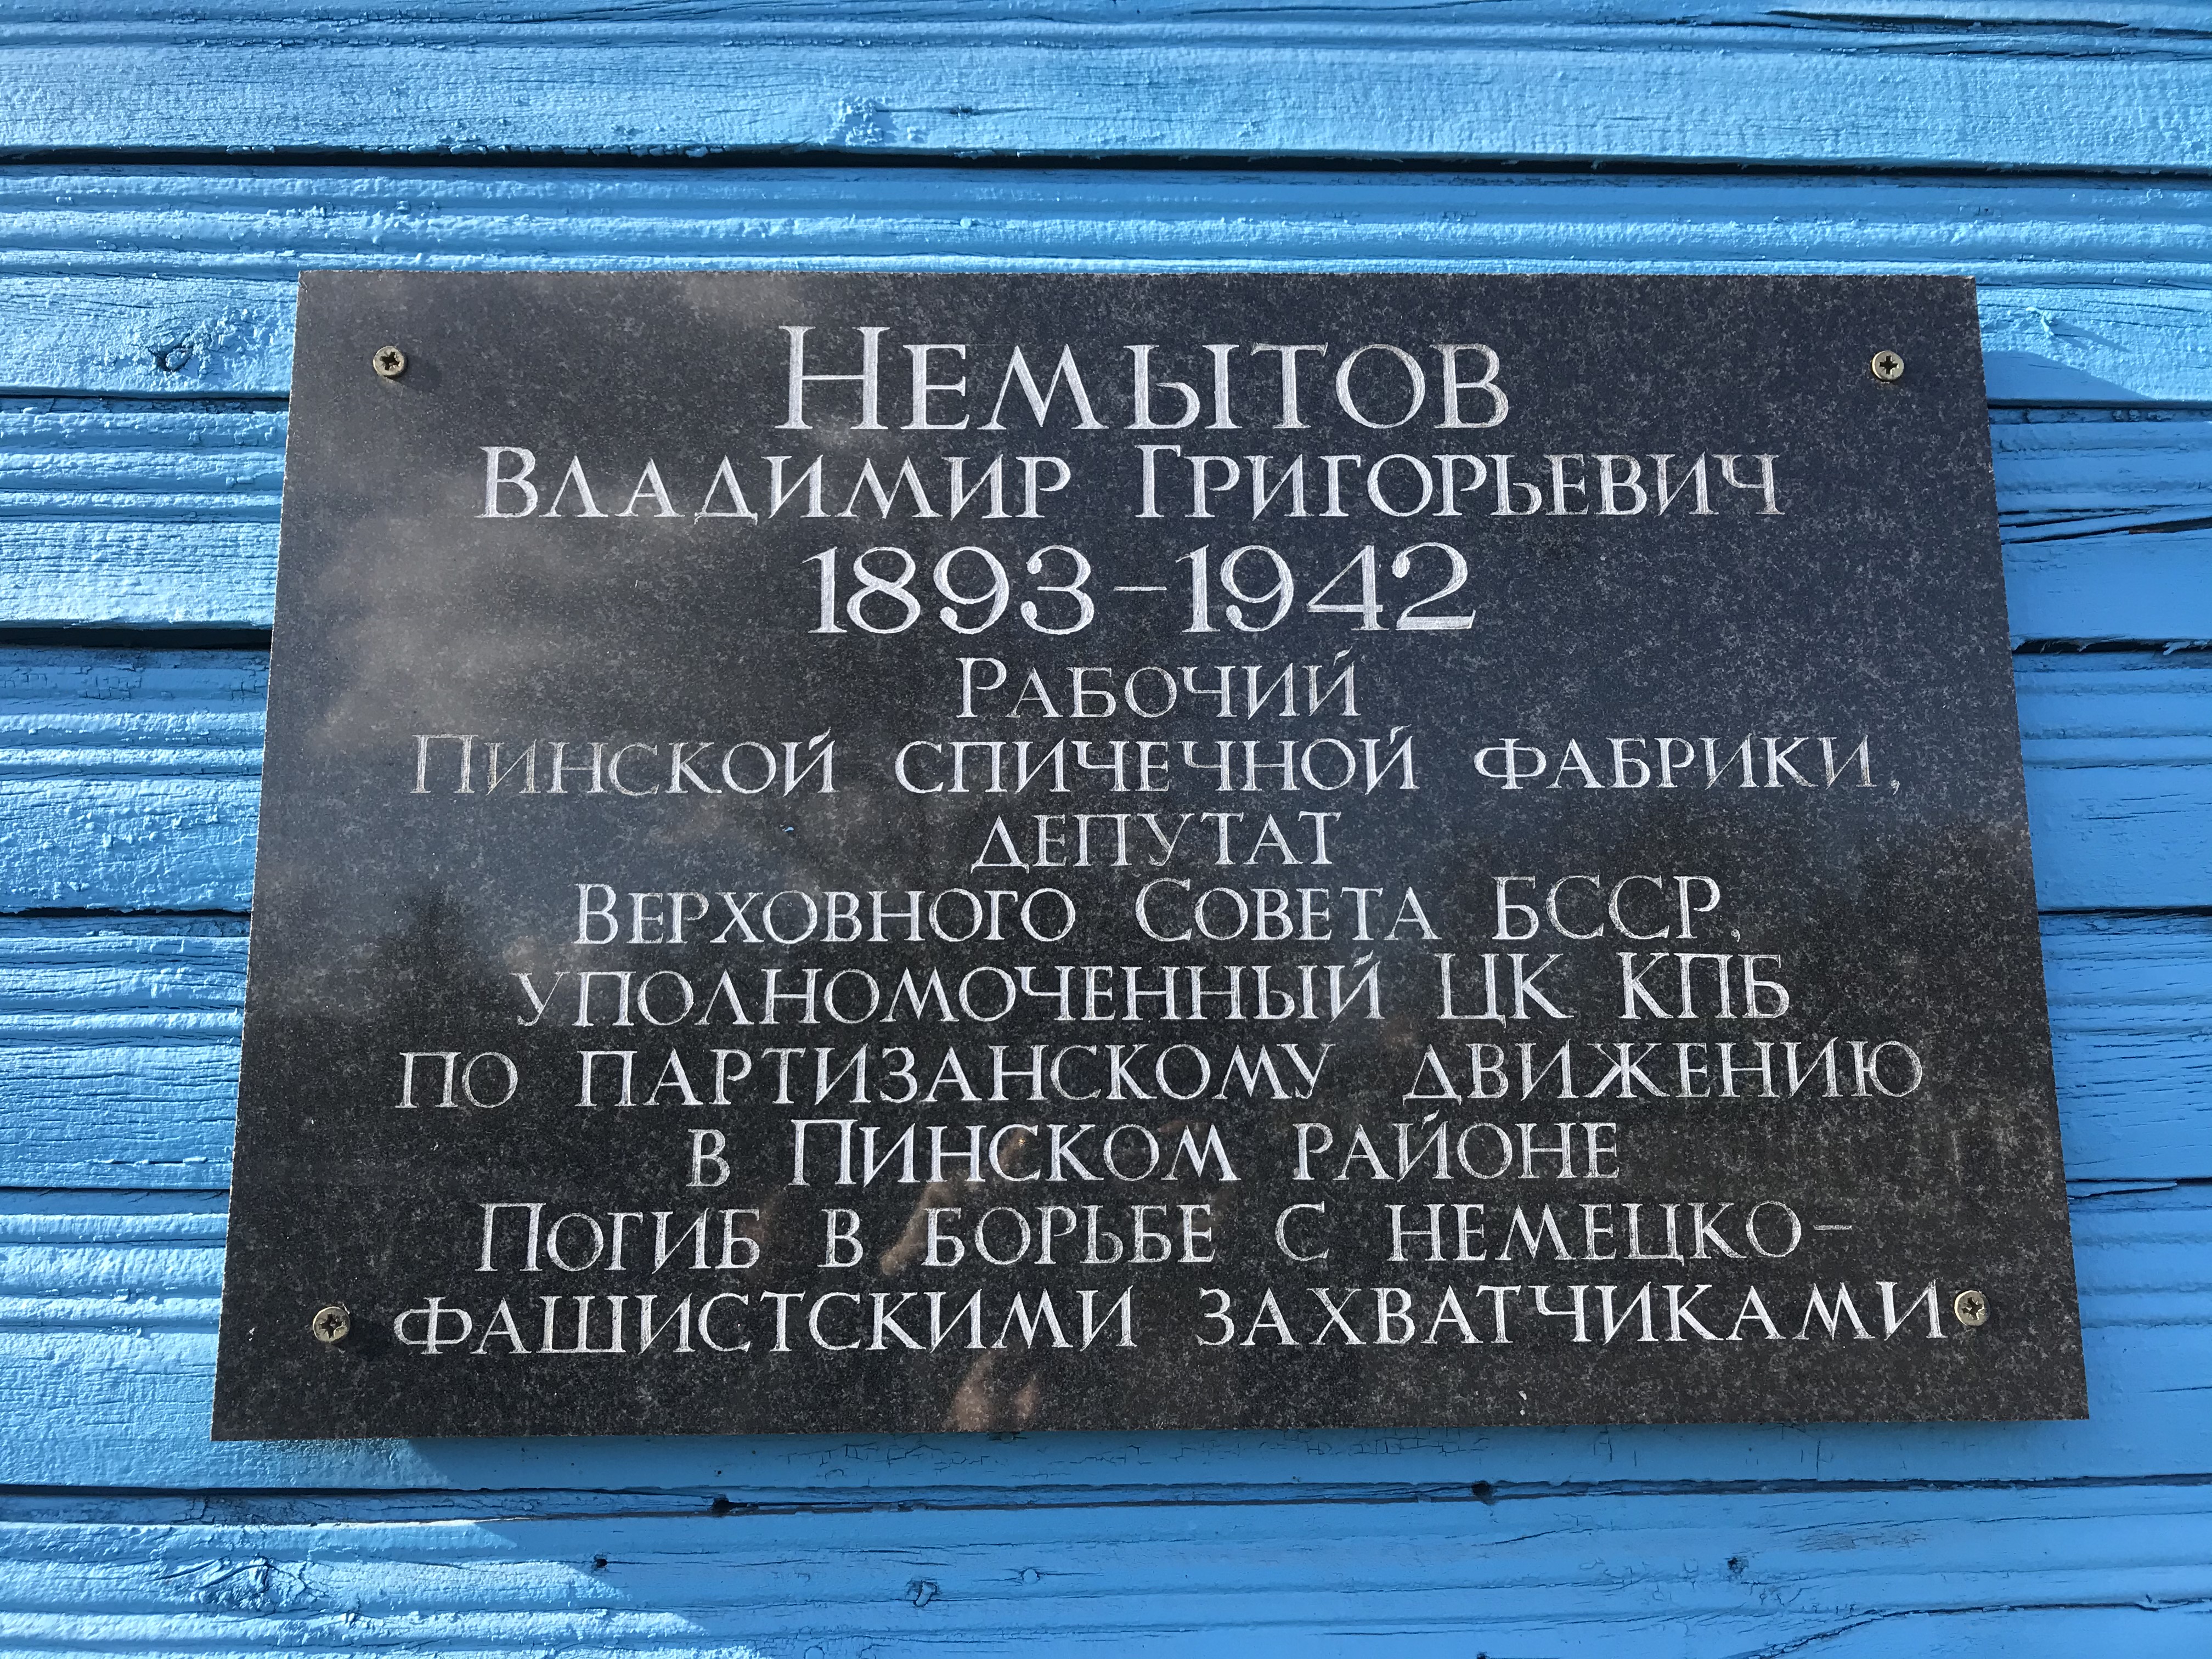 Мемориальная доска В честь В.Г. Немытова, расположенная в г. Пинск,  район, Брестская область